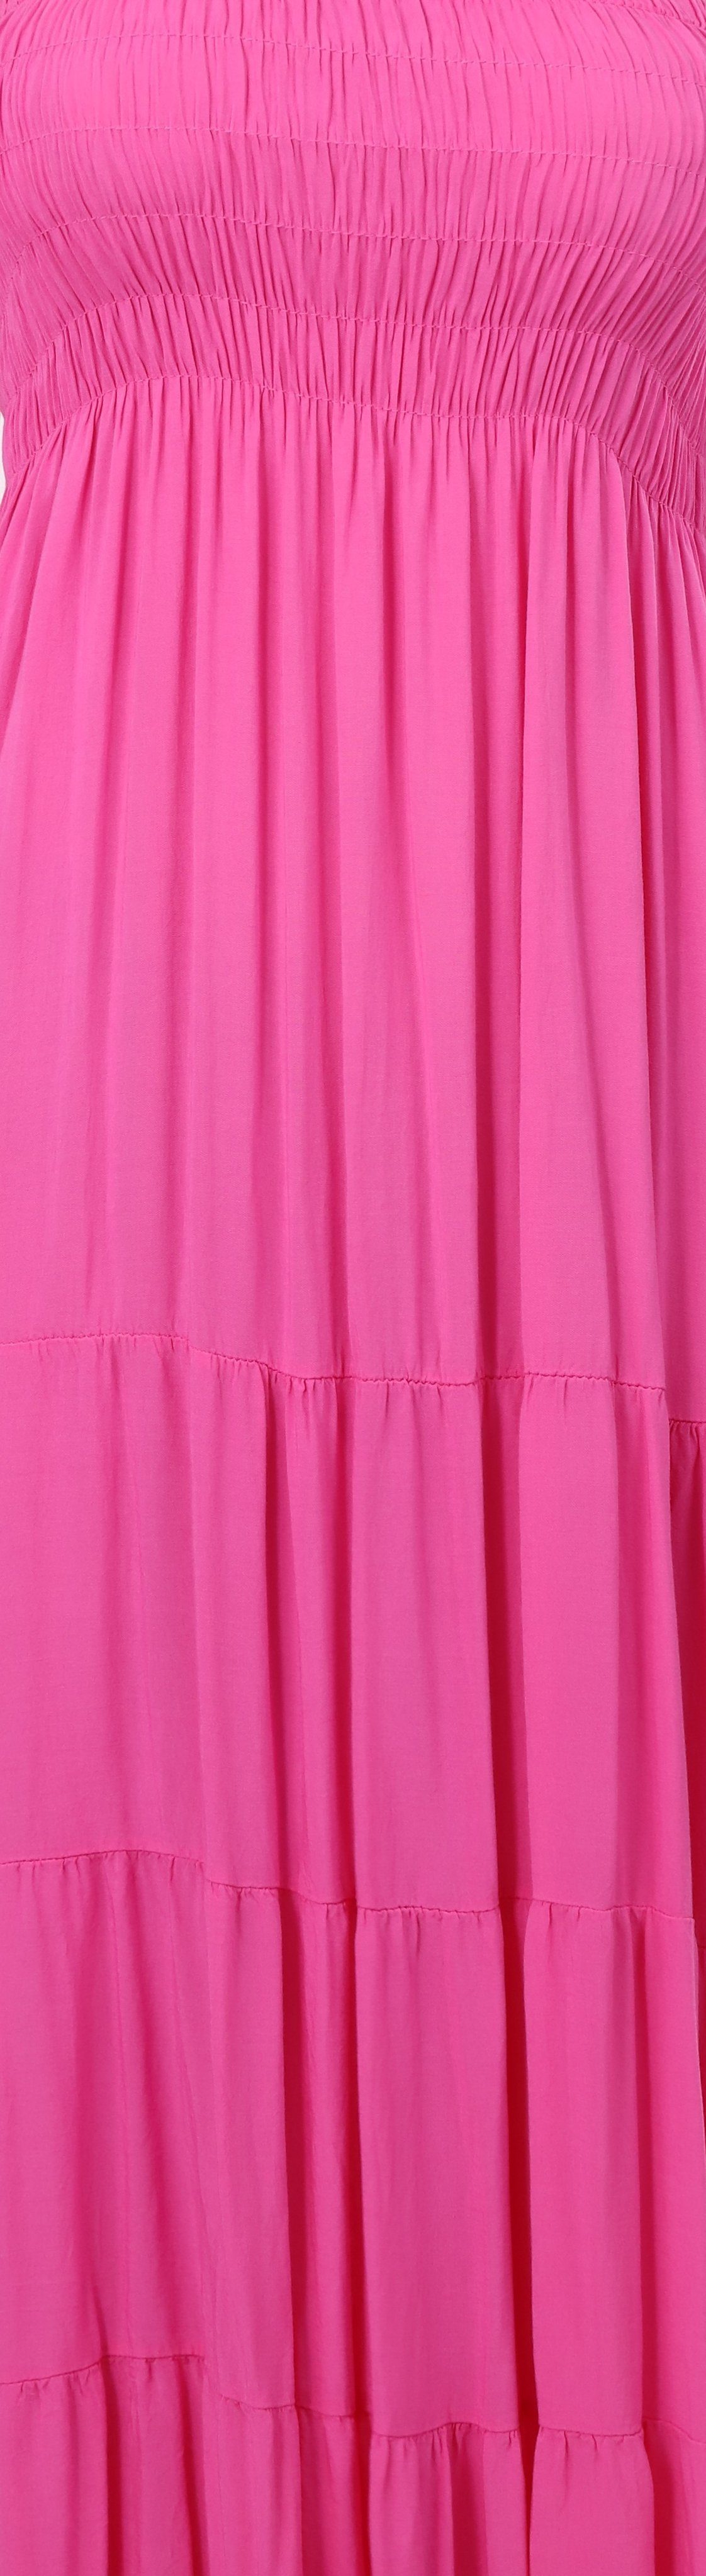 malito more than fashion Bandeaukleid Sommerkleid figurumspielendes Einheitsgröße rosa Strandkleid 4635